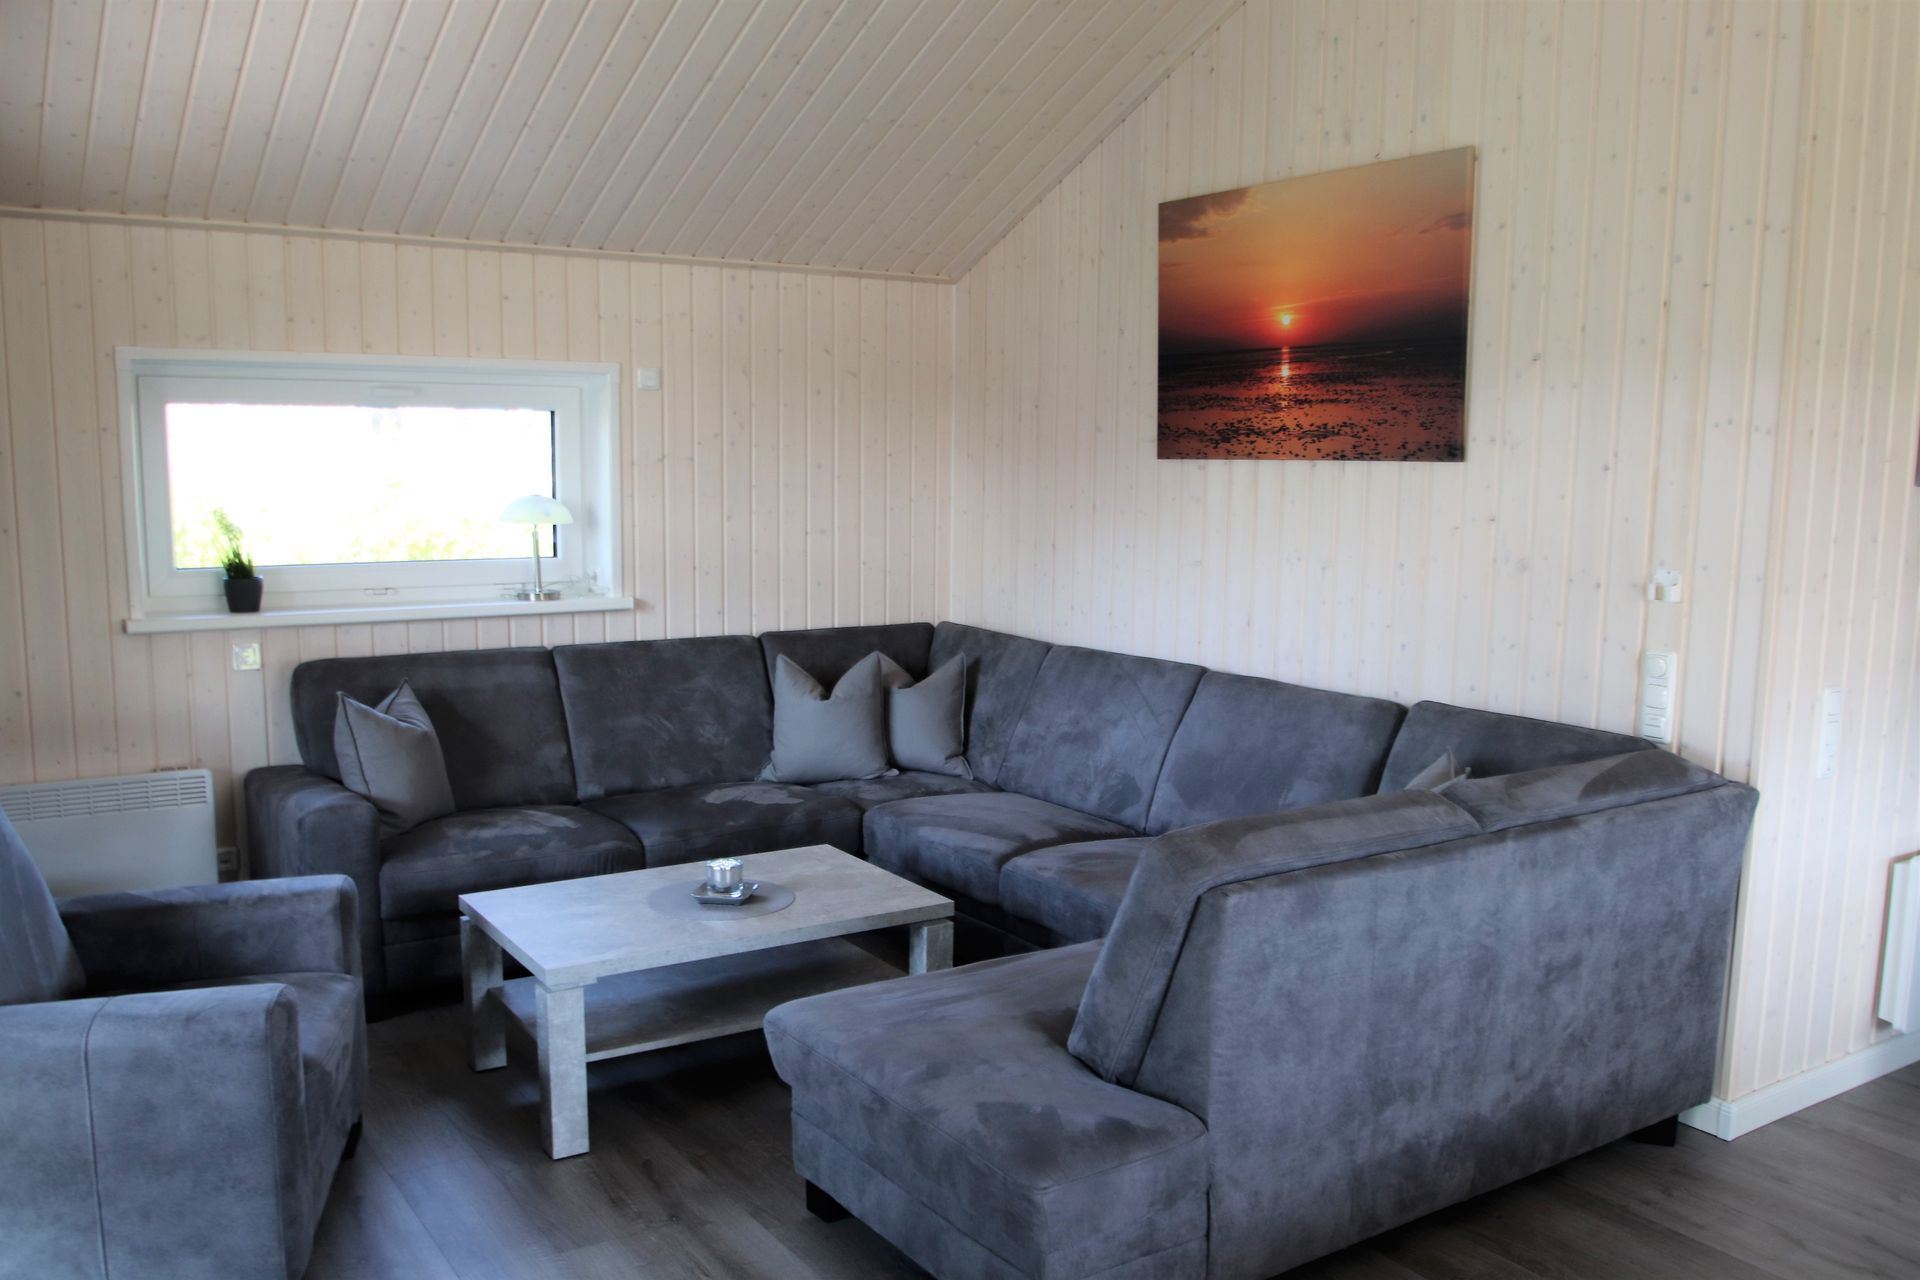 Couchgarnitur im Wohnraum Ferienhaus barrierefrei Anwaß 16b 25718 Friedrichskoog Nordsee